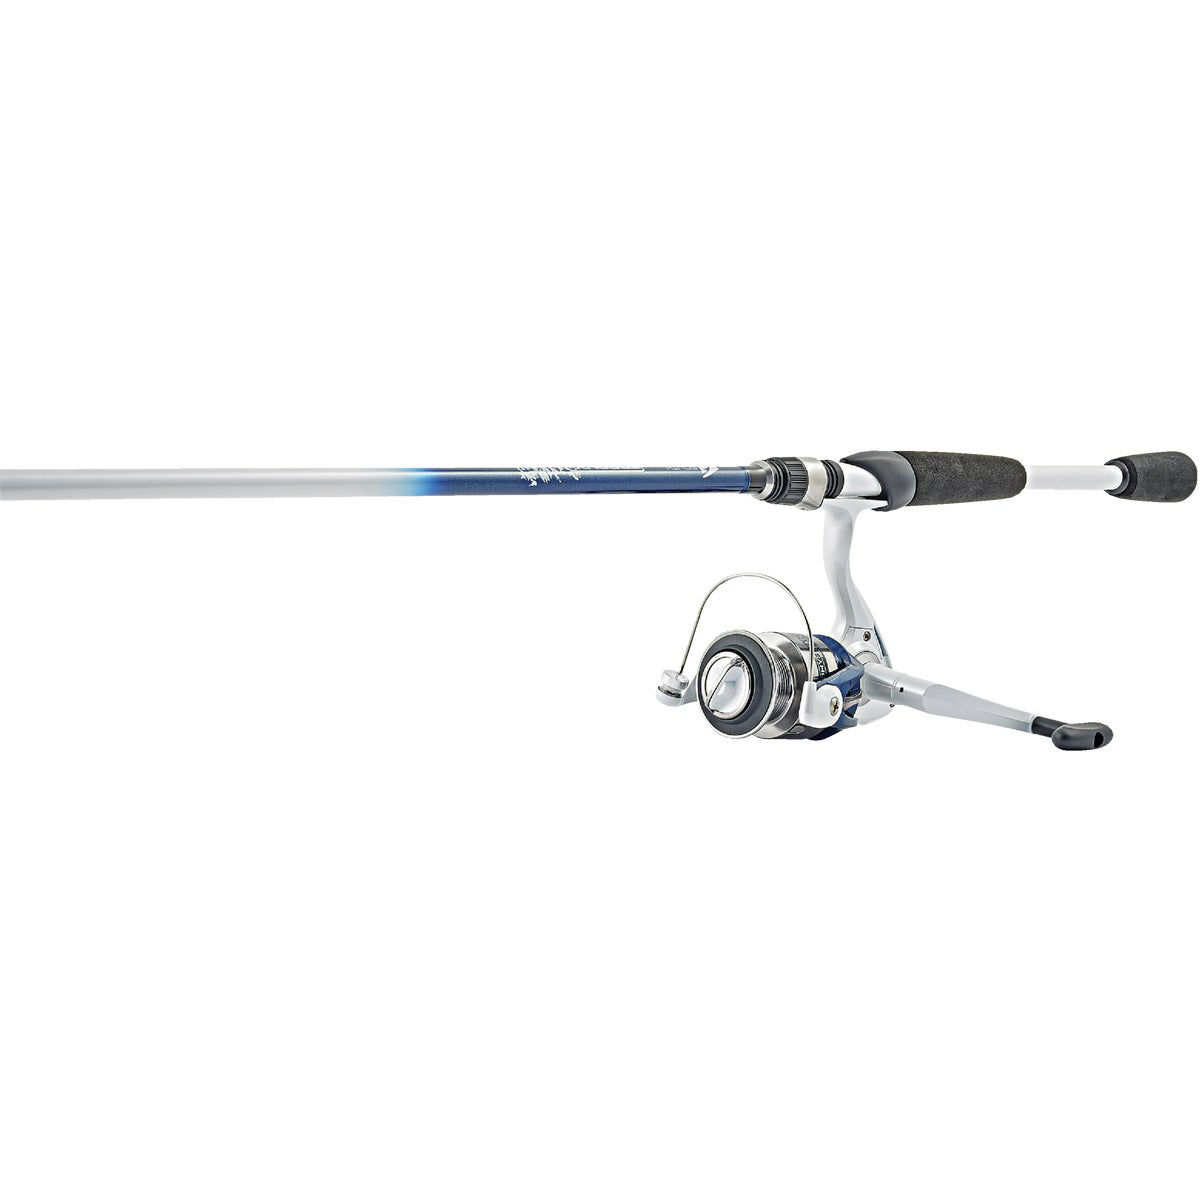 SouthBend Trophy Stalker 7 Ft. Fiberglass Fishing Rod & Spinning Reel